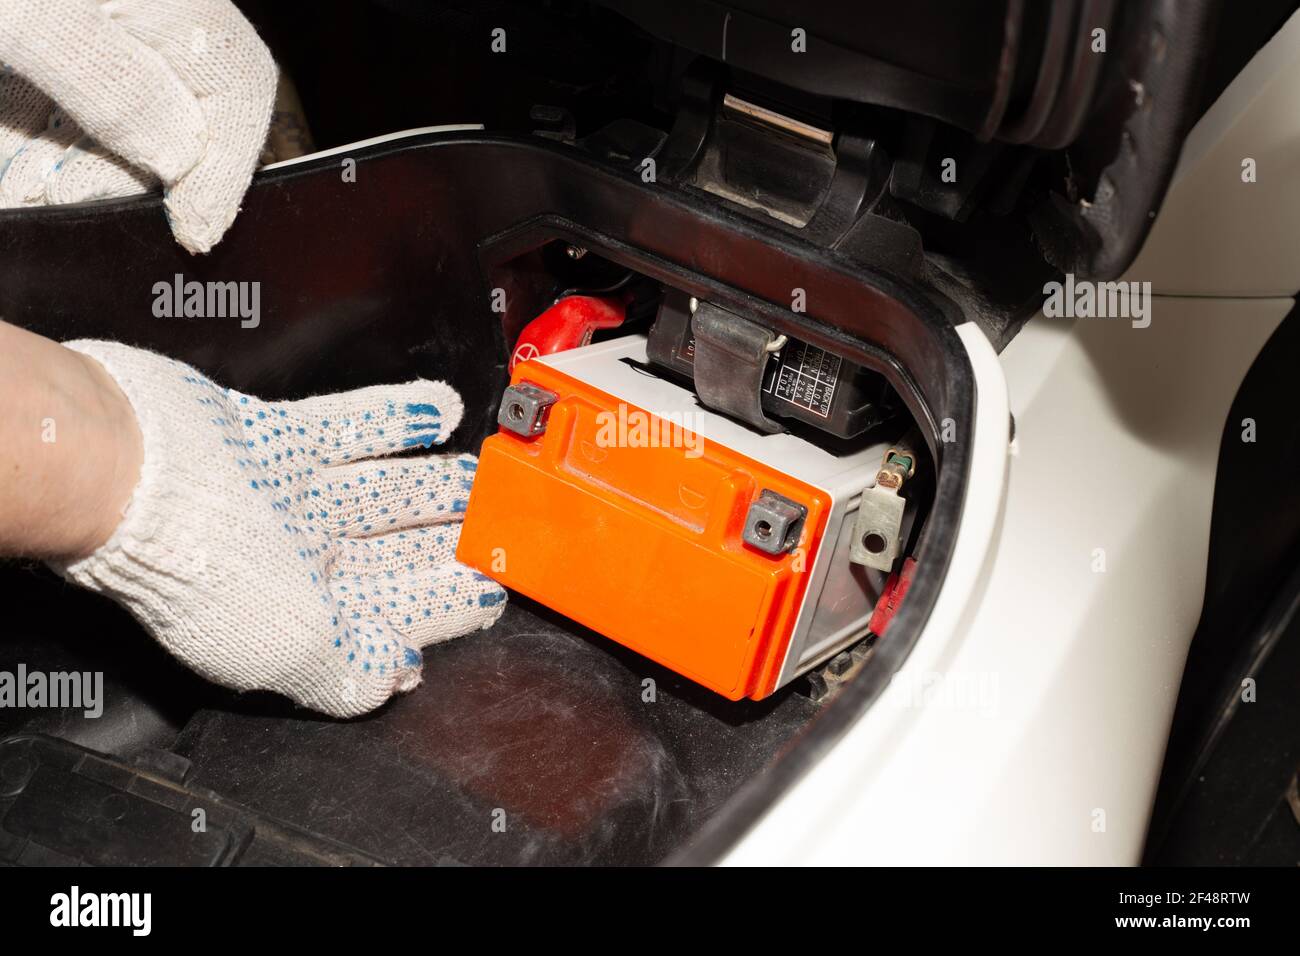 Austauschen der Motorradbatterie. Ein Automechaniker in einem Autoservice  nimmt die Batterie aus dem Motorrad, um sie zu laden oder zu ersetzen  Stockfotografie - Alamy